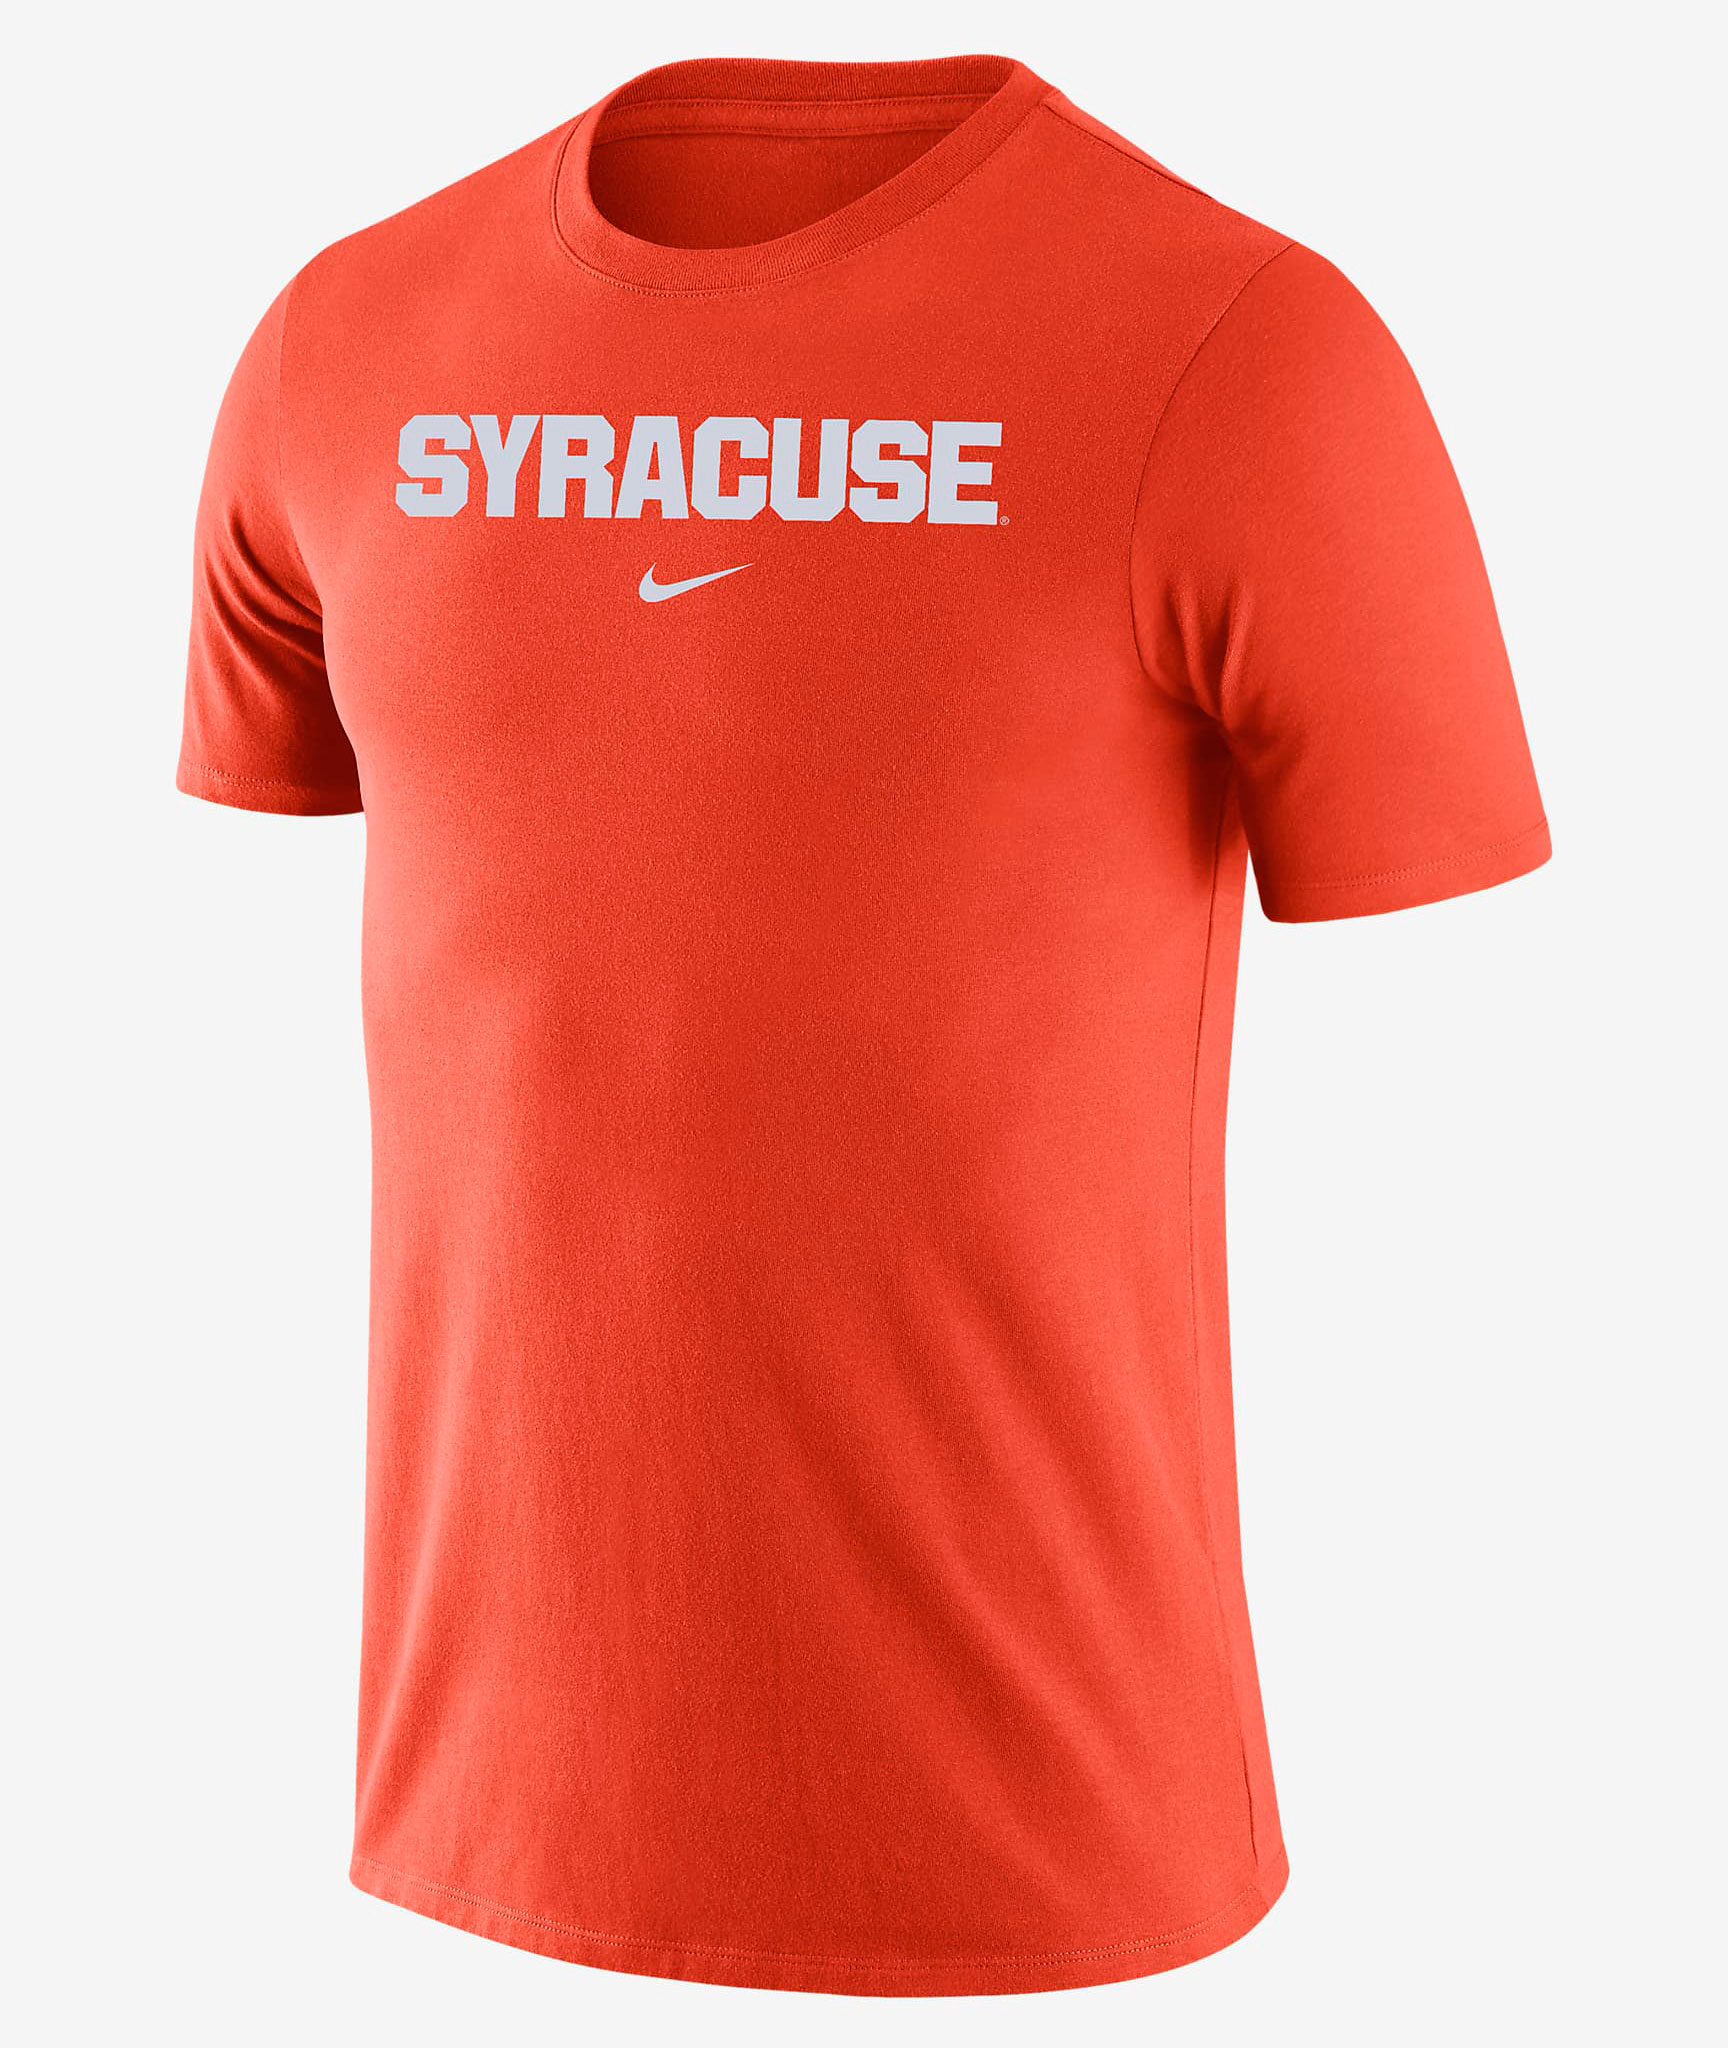 nike-dunk-high-syracuse-orange-shirt-1